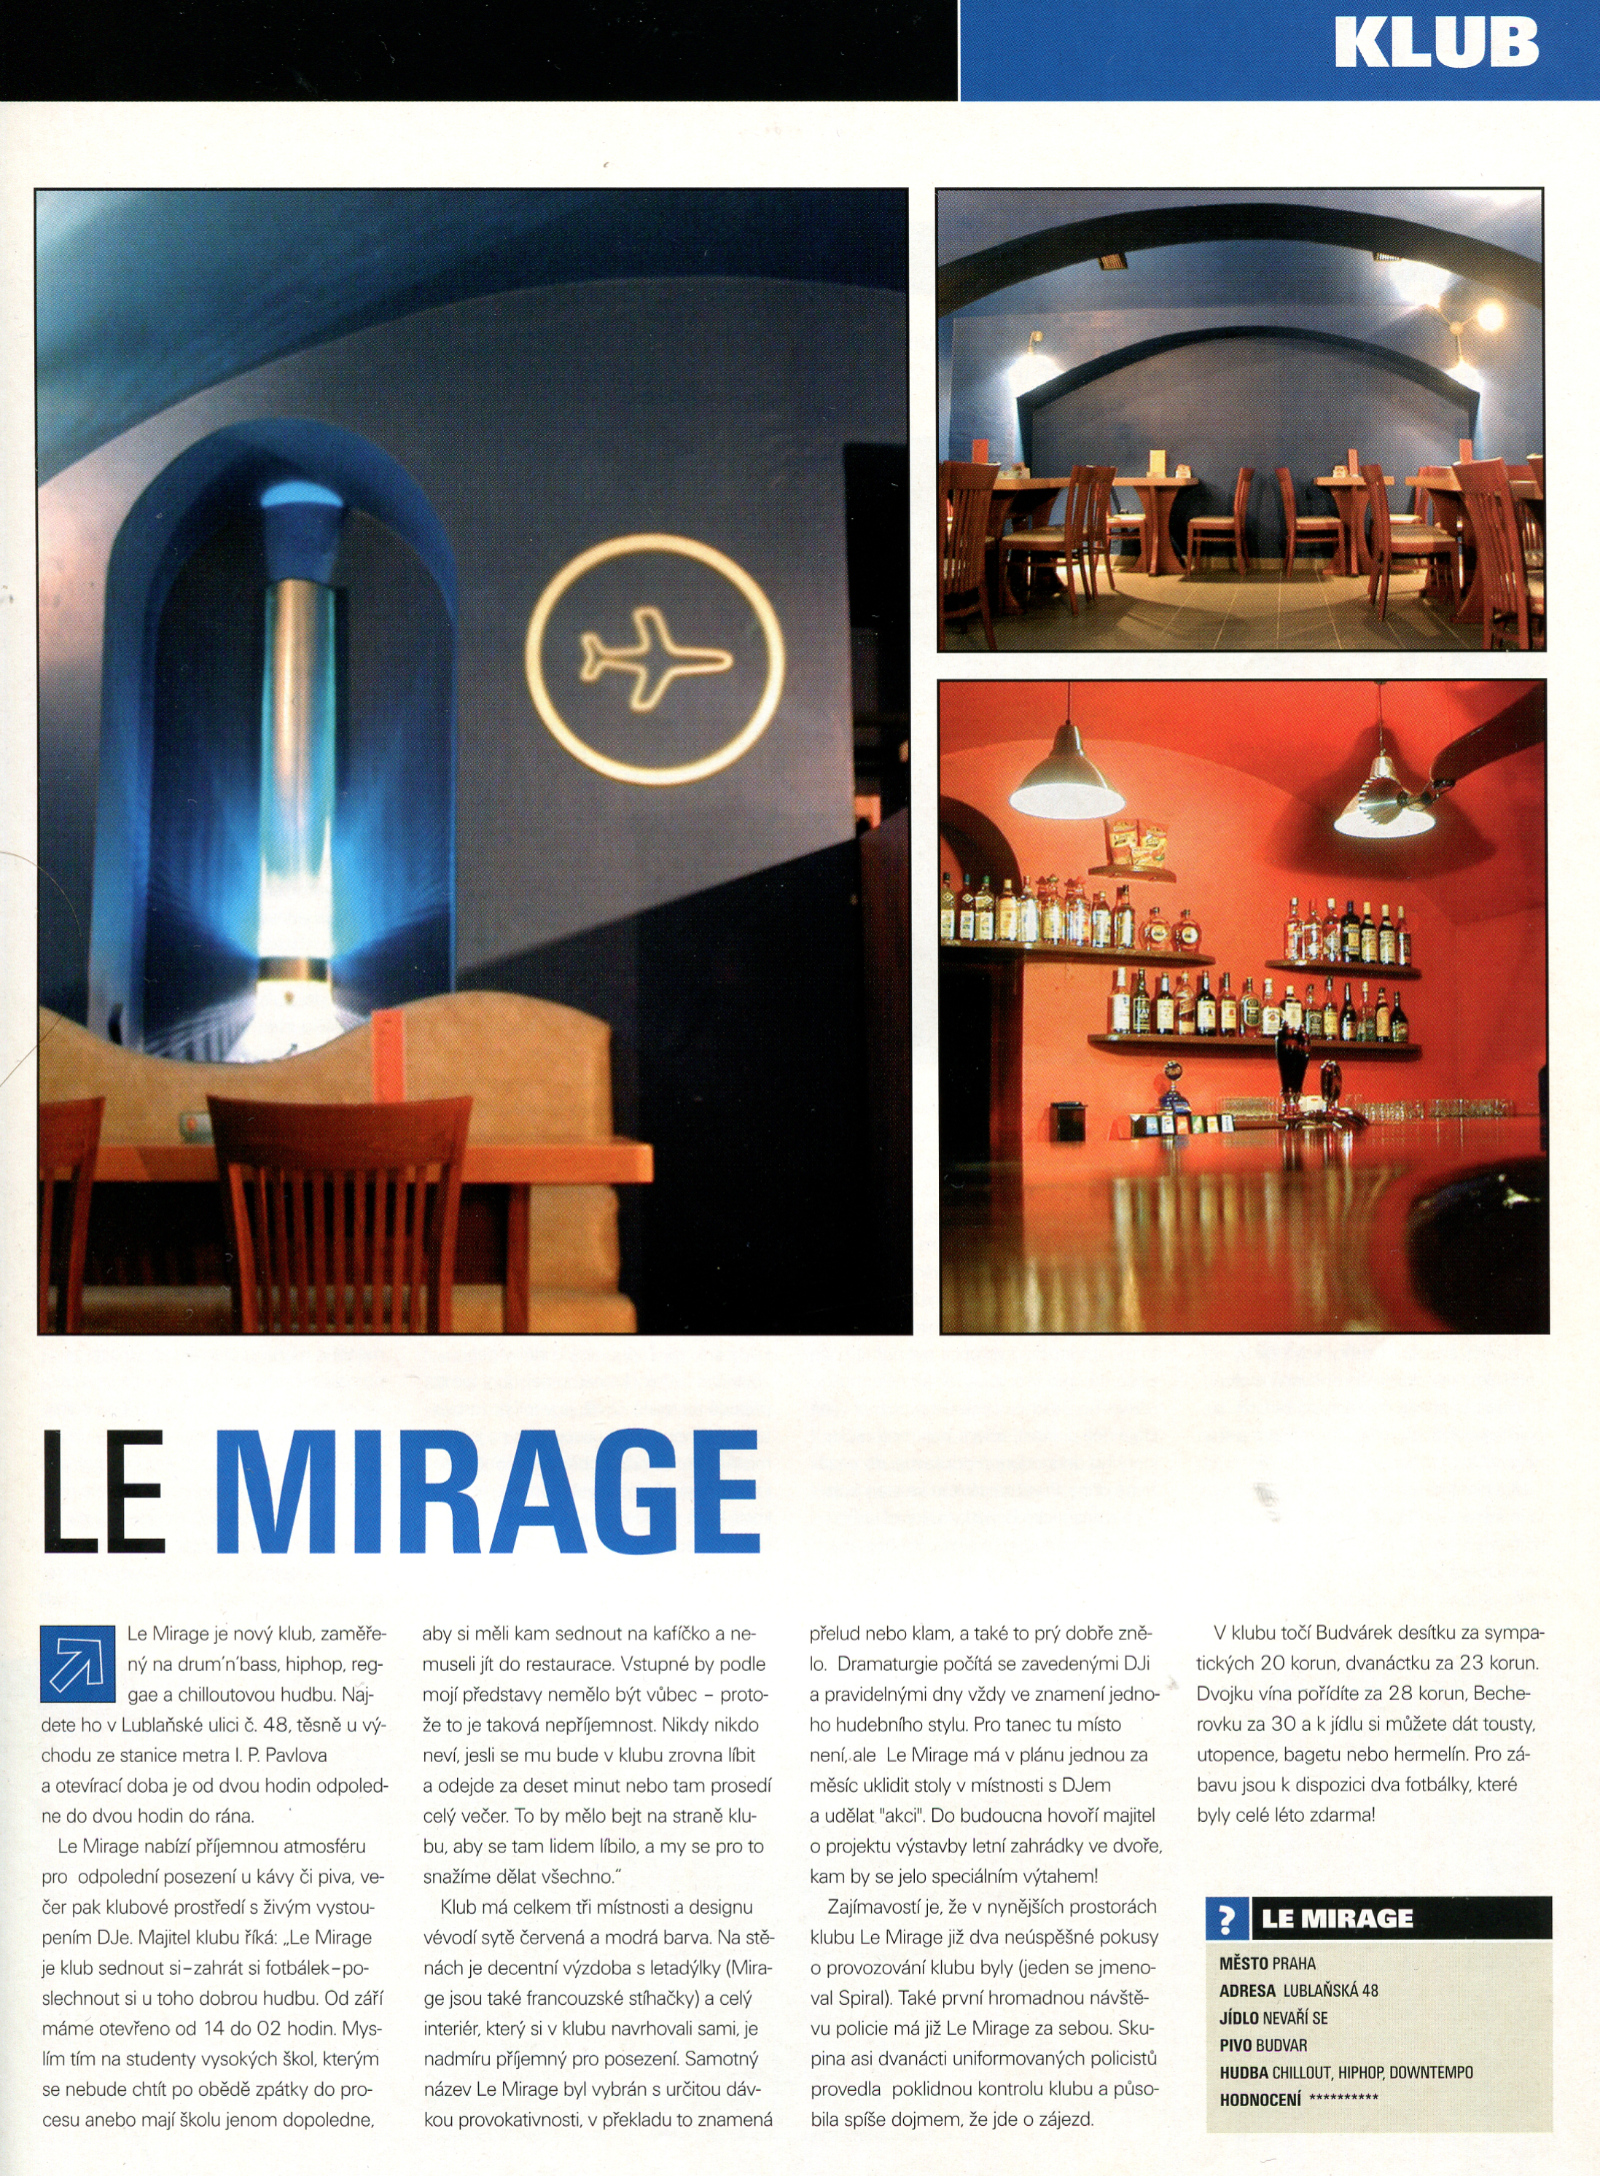 Klub Le Mirage  - článek v časopisu Ultramix